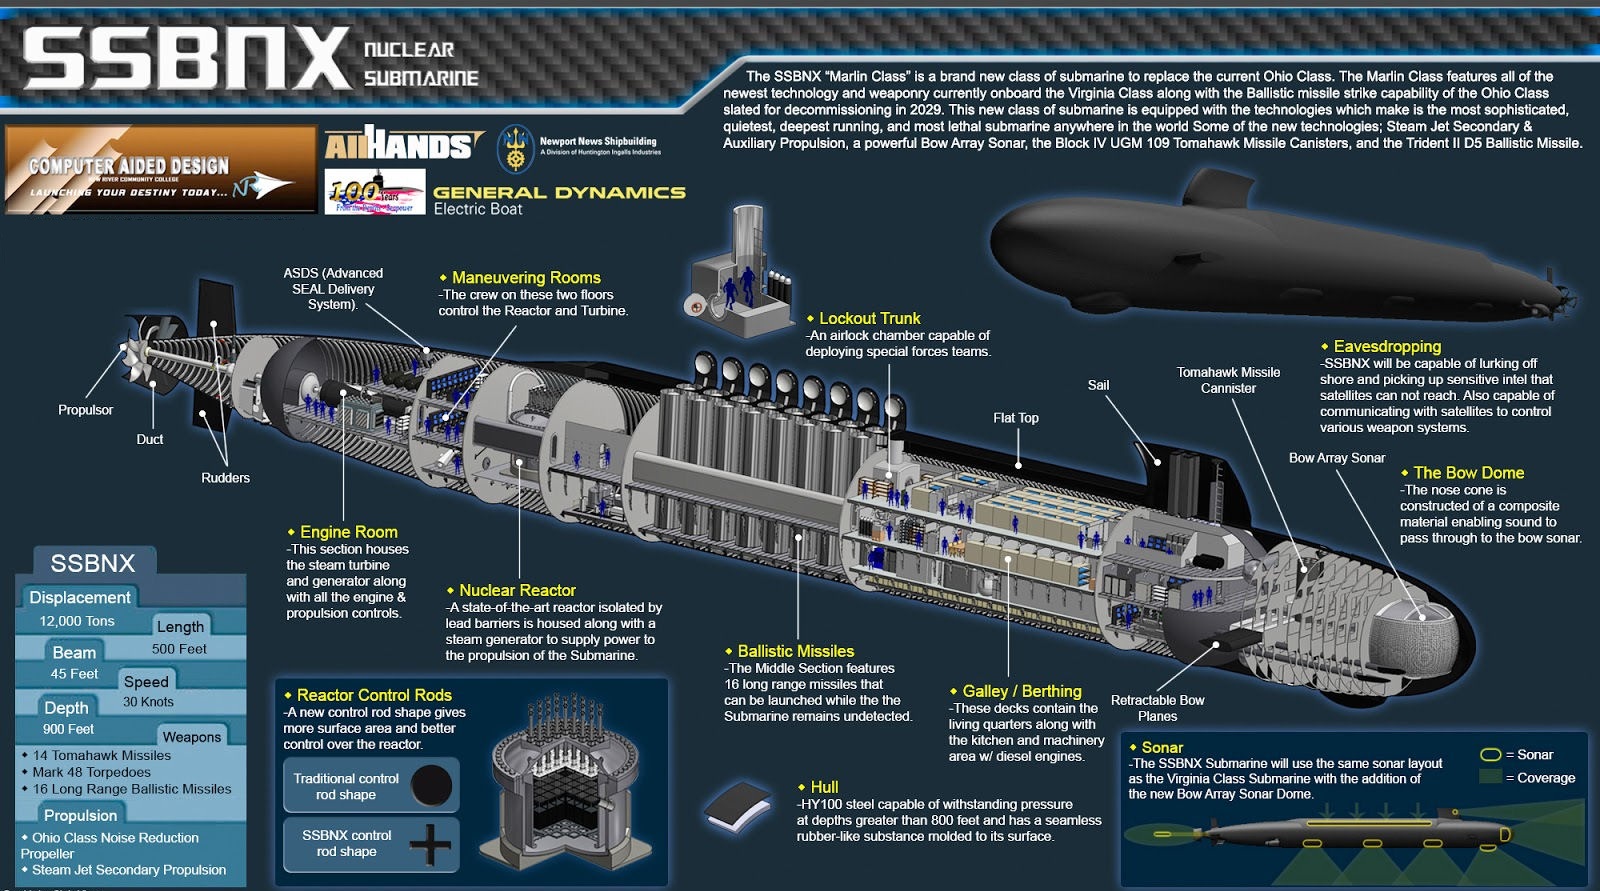 哥倫比亞級戰略核潛艇